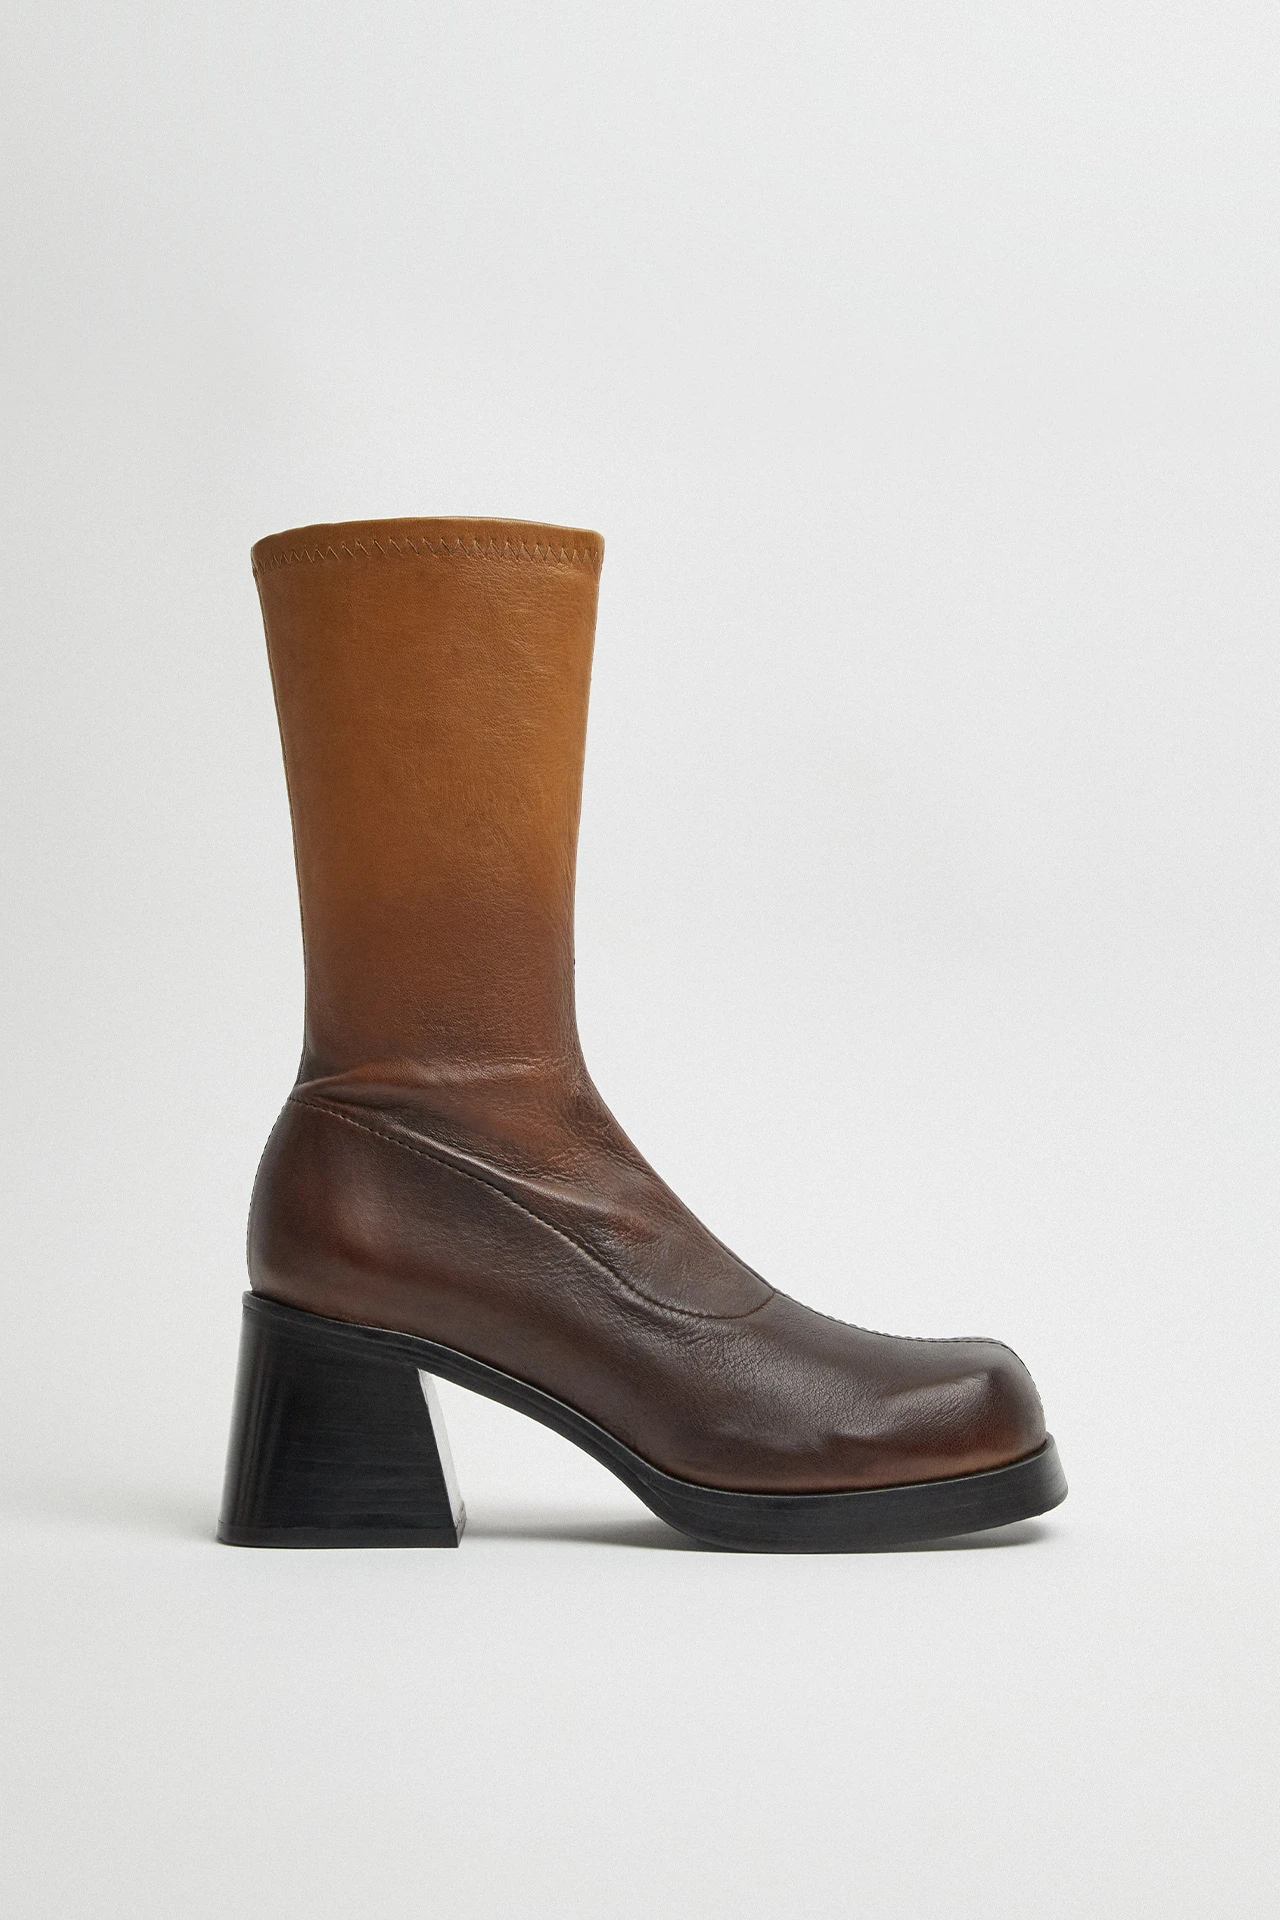 Miista-elke-brown-degrade-boots-01